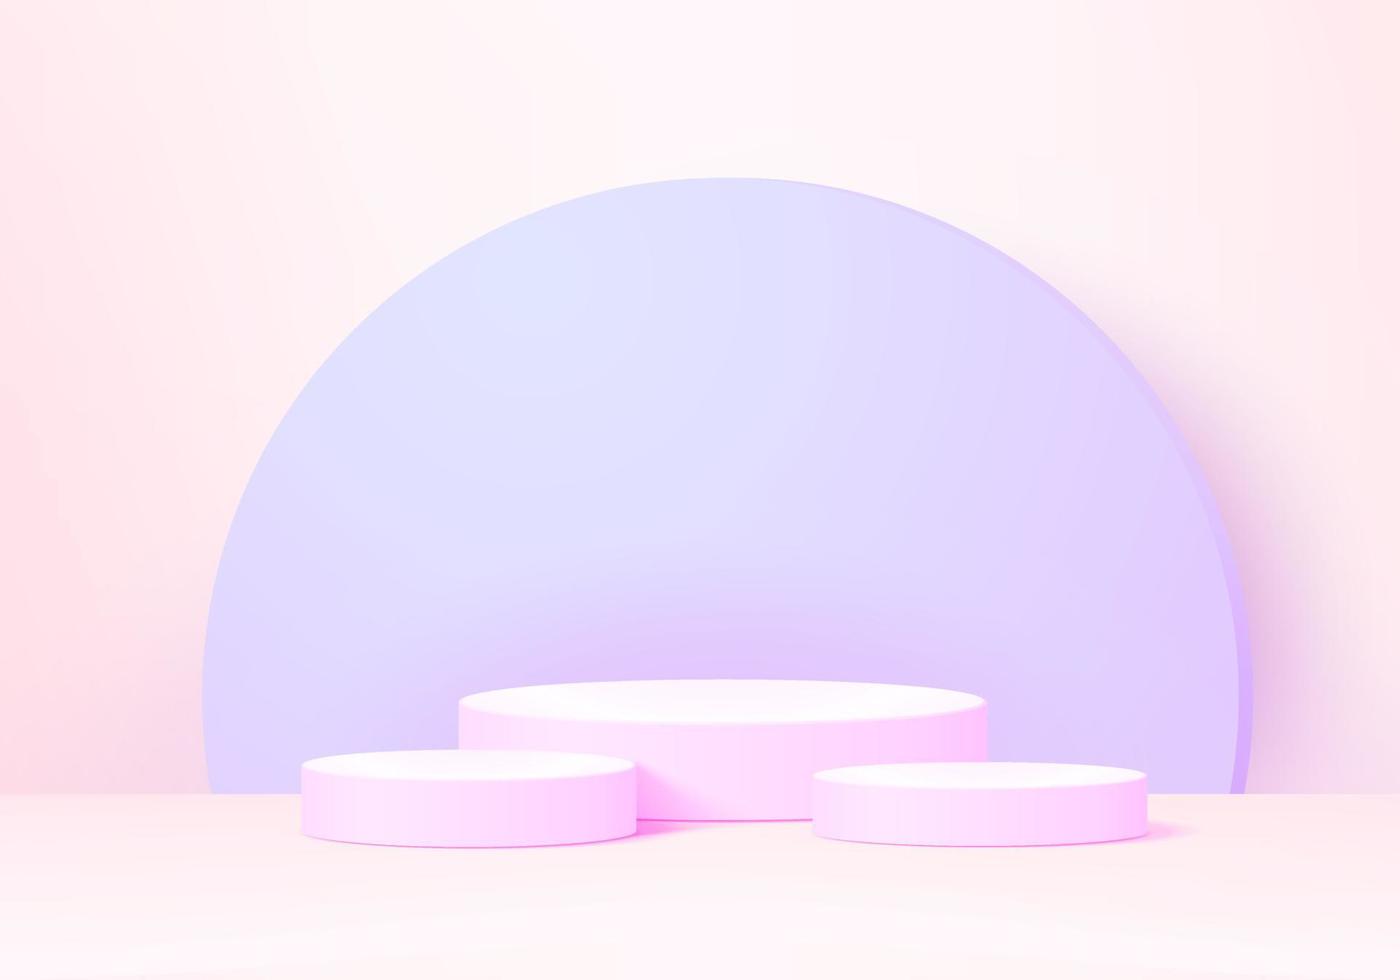 3D-bakgrundsprodukter visar podiescen med geometrisk plattformsställning för att visa kosmetiska produkter. scen showcase på piedestal display rosa studio vektor